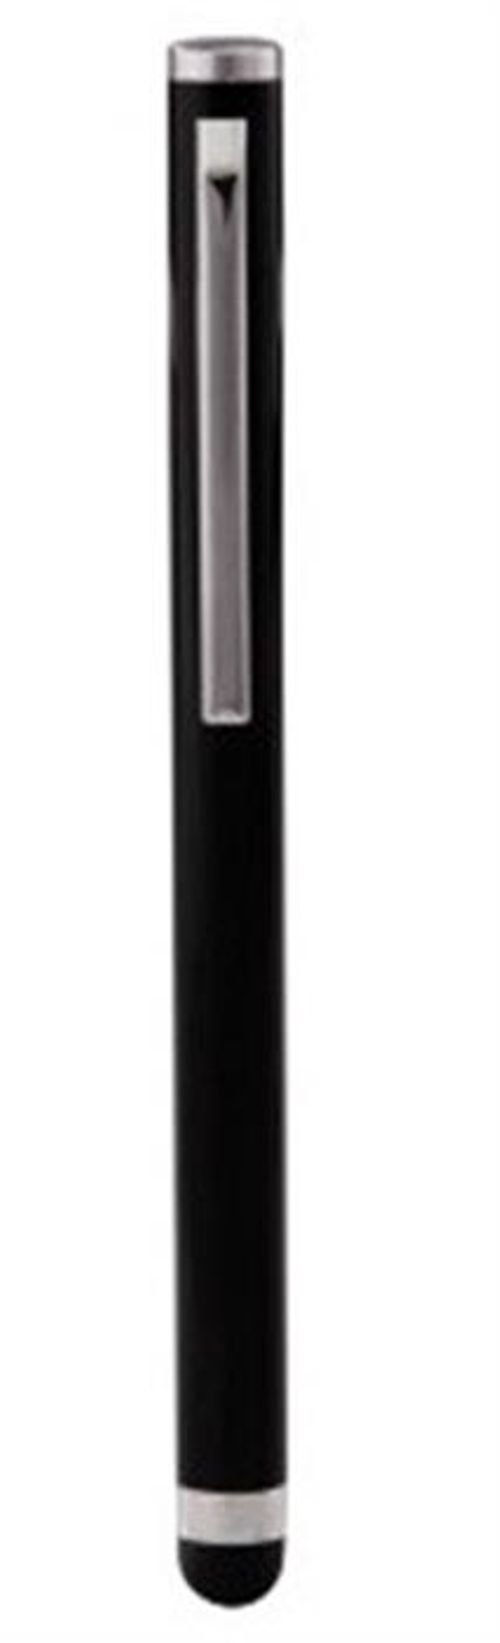 قلم شاشات اللمس هاما - لون أسود - موديل 108370